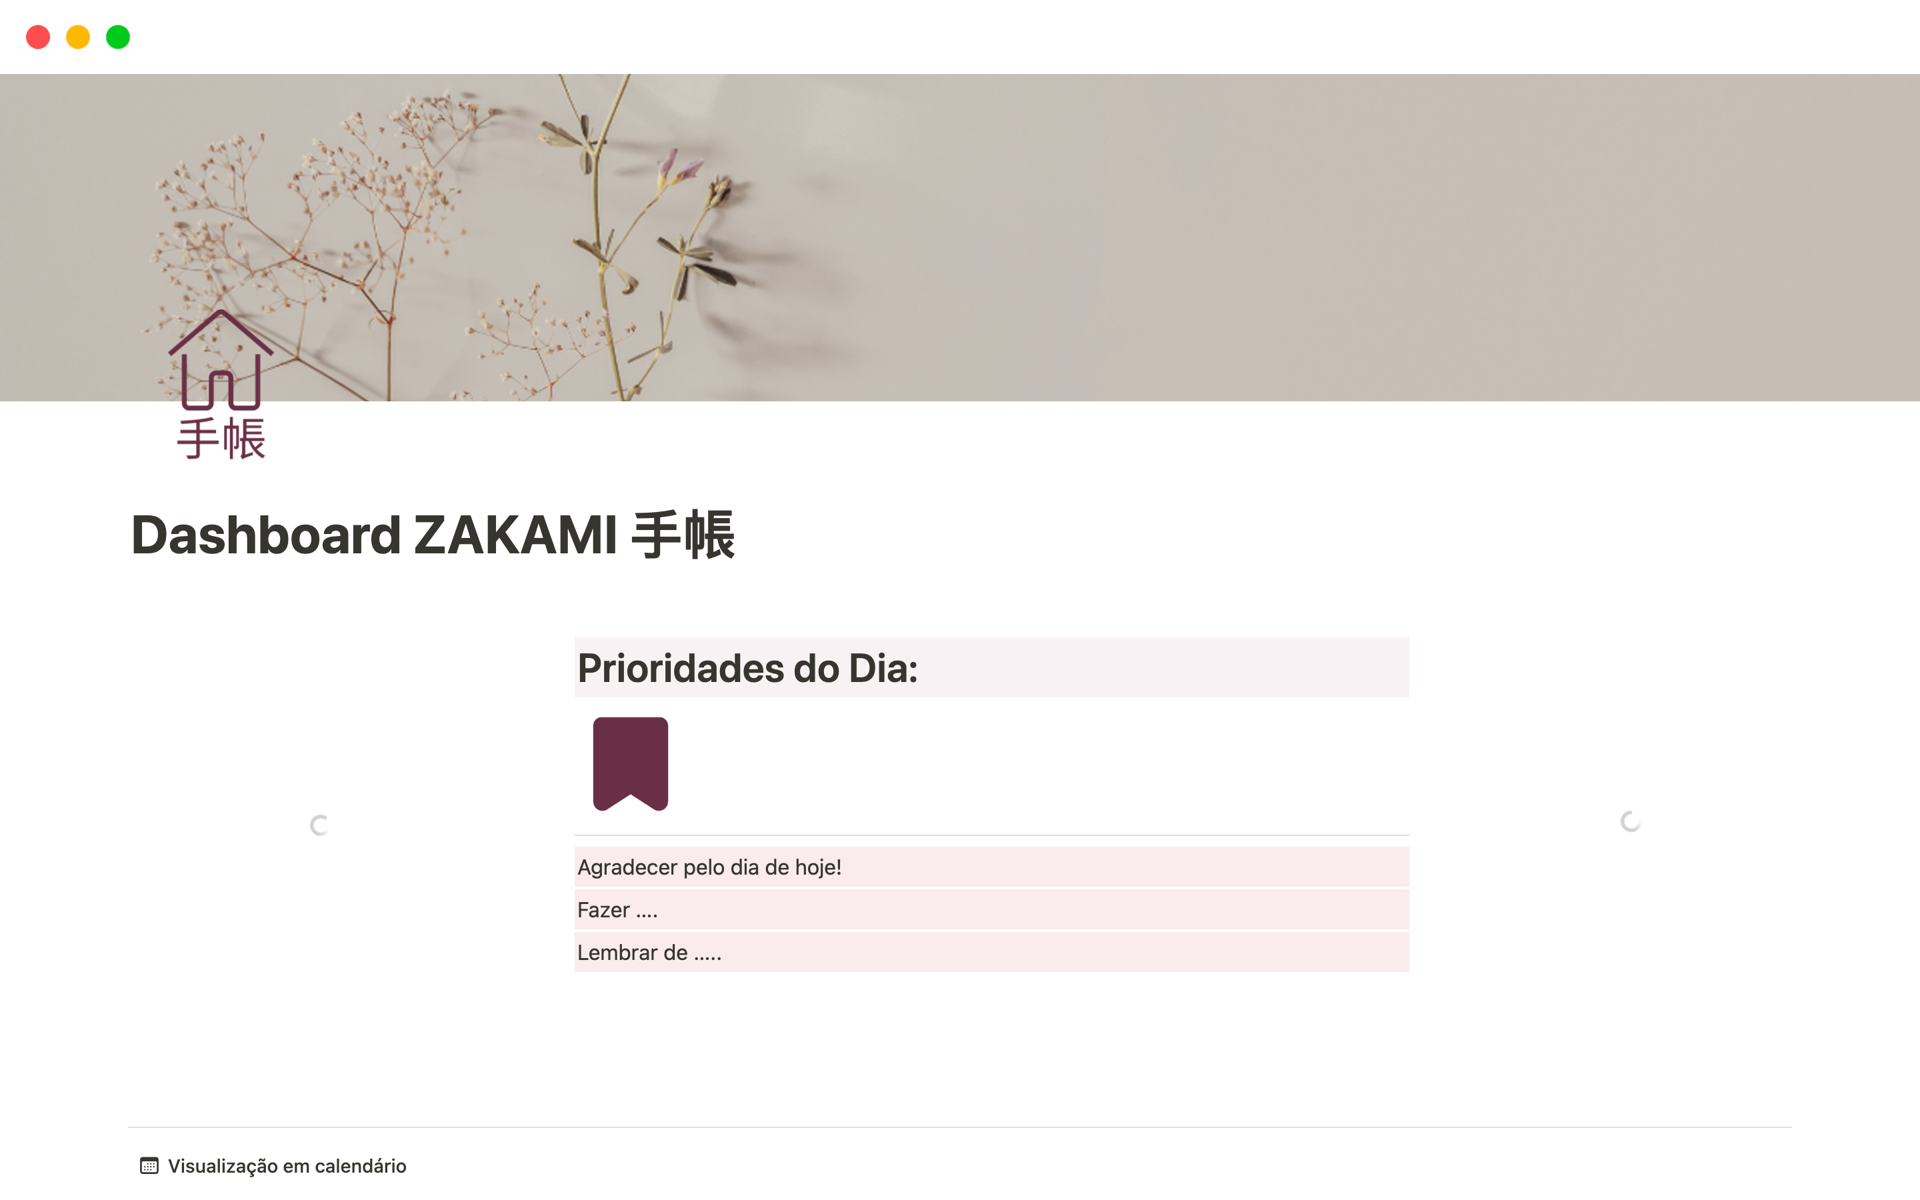 Uma prévia do modelo para Dashboard ZAKAMI 手帳 